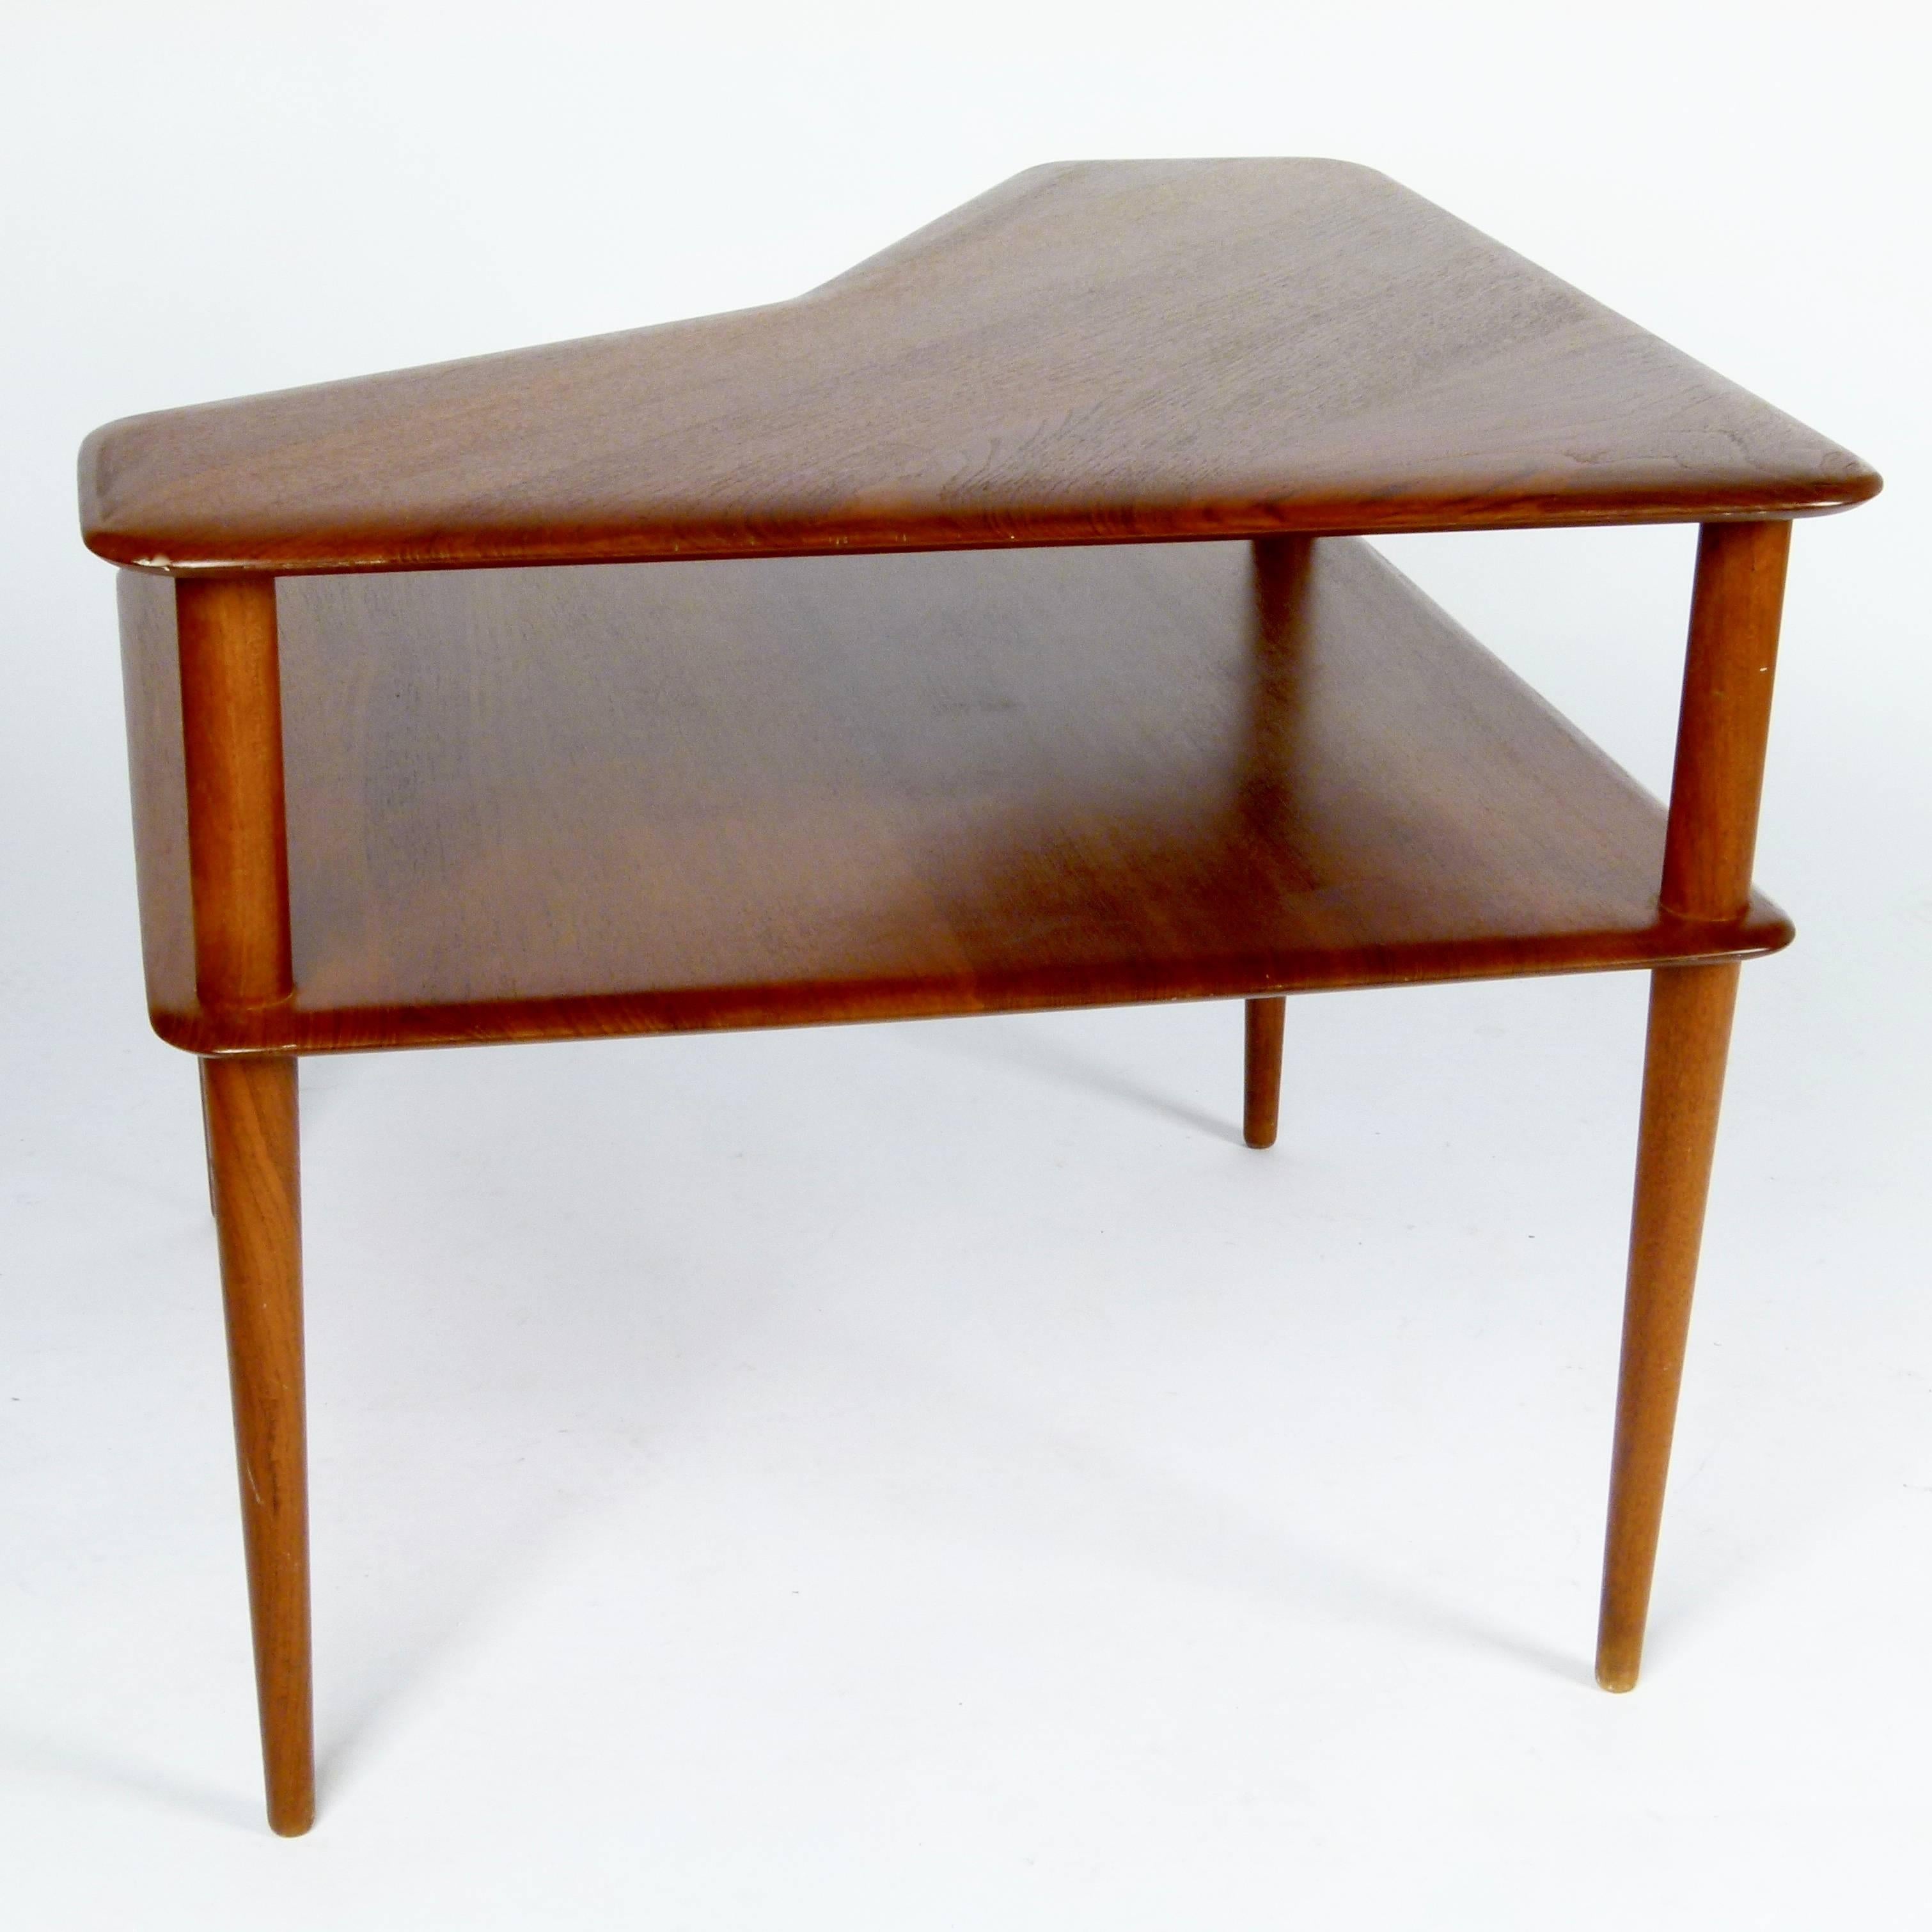 Mid-20th Century Peter Hvidt Corner Table in Teak